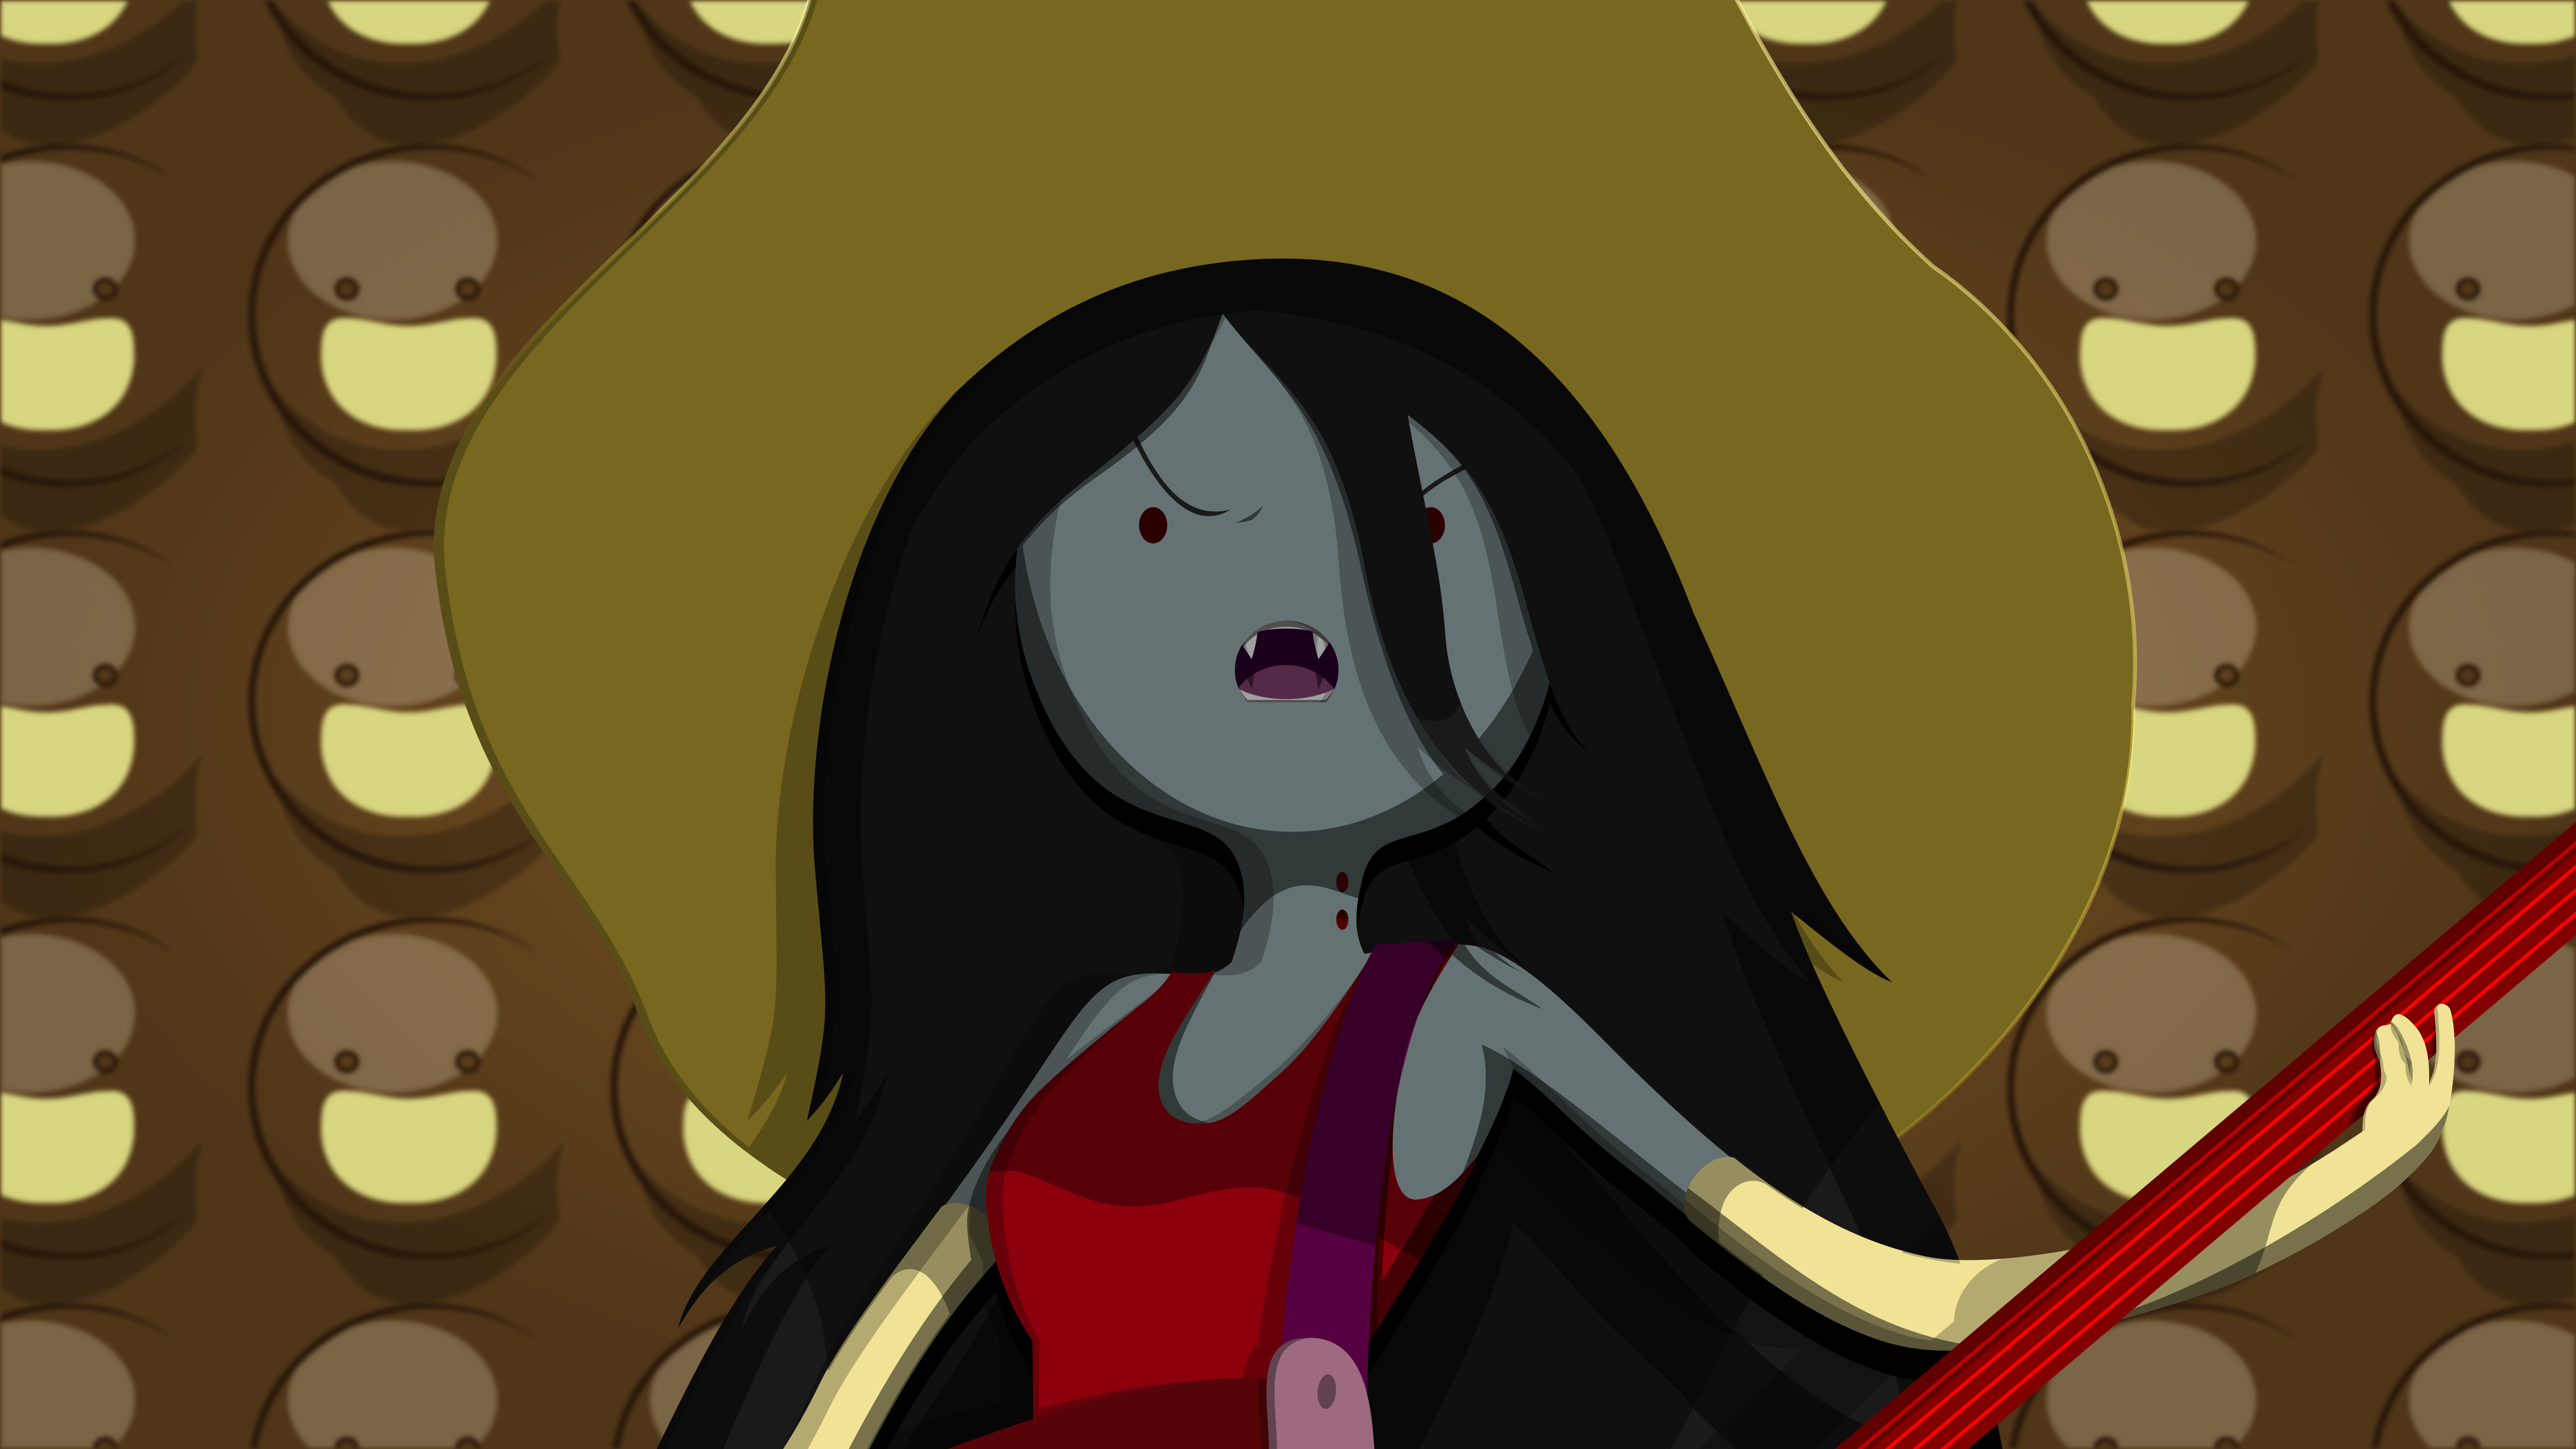 Adventure Time Marceline The Vampire Queen Video Games Vampires 5000x2812